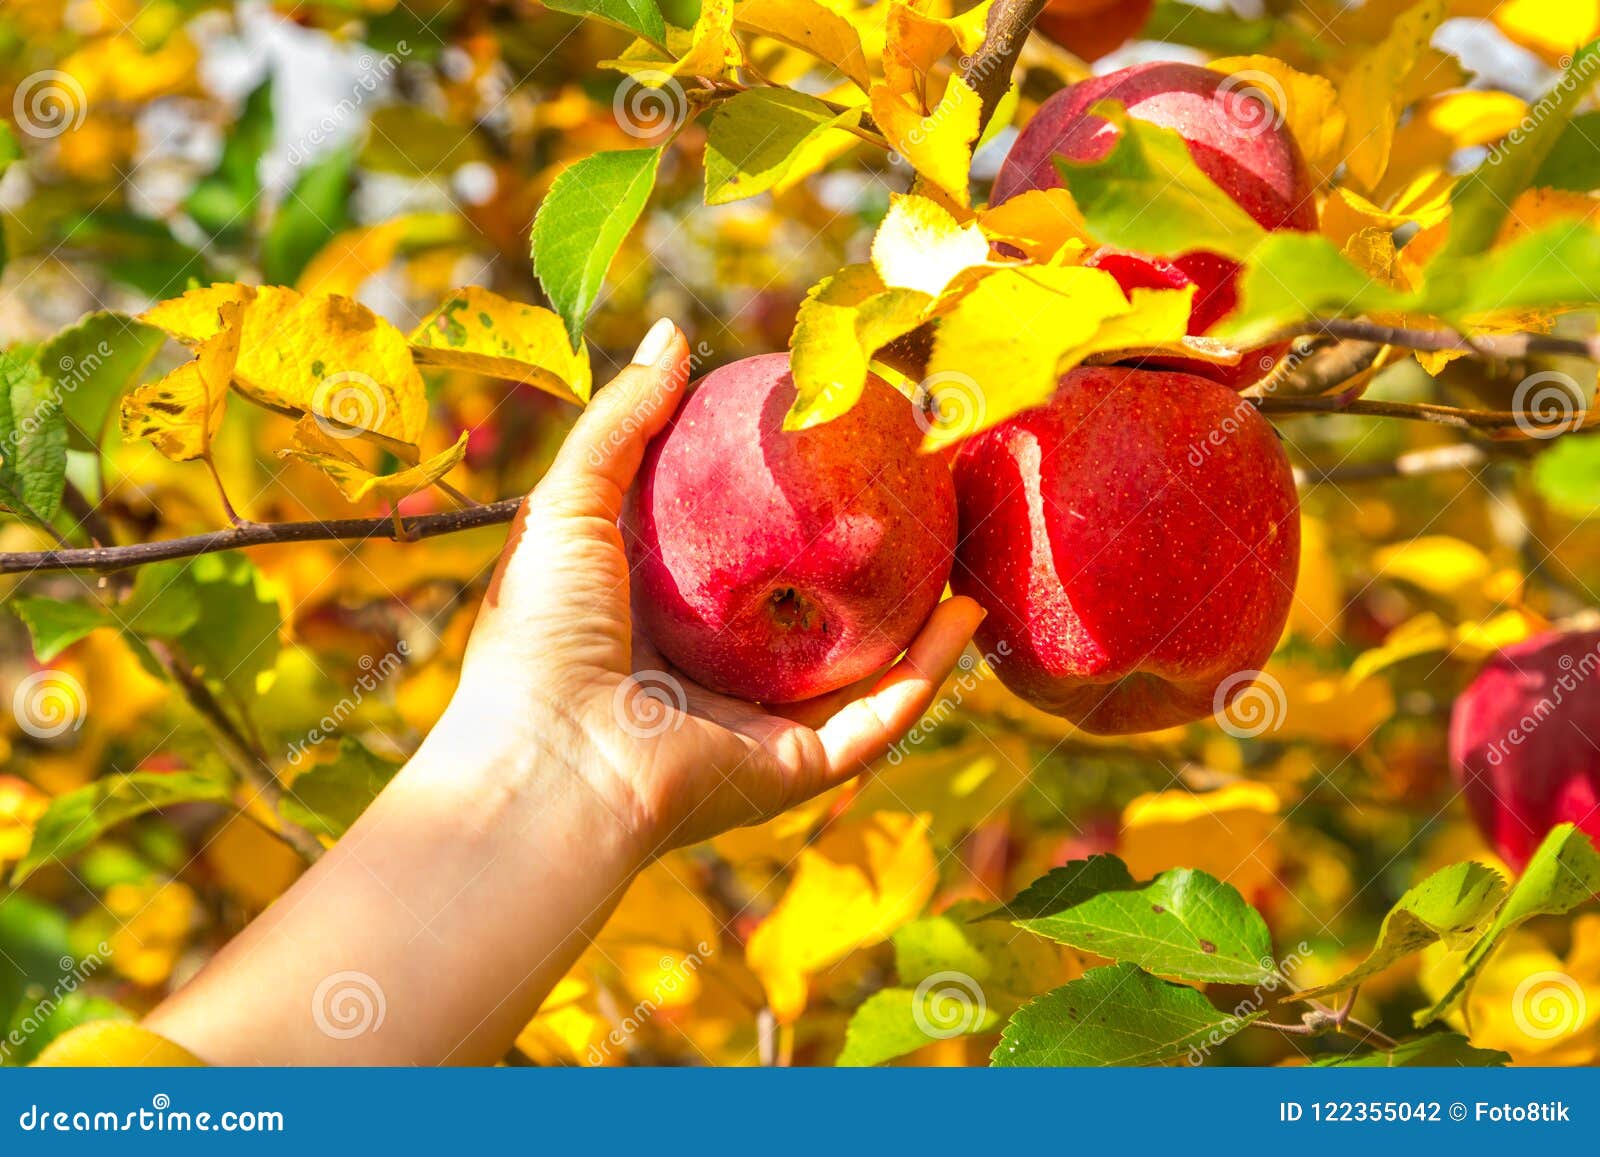 Осенью с яблони собрали яблоки желтые зеленые. Мичуринск яблоки. Осенью с яблонь сняли. Яблоки зимой картинки. Яблоко Мичуринск герб.